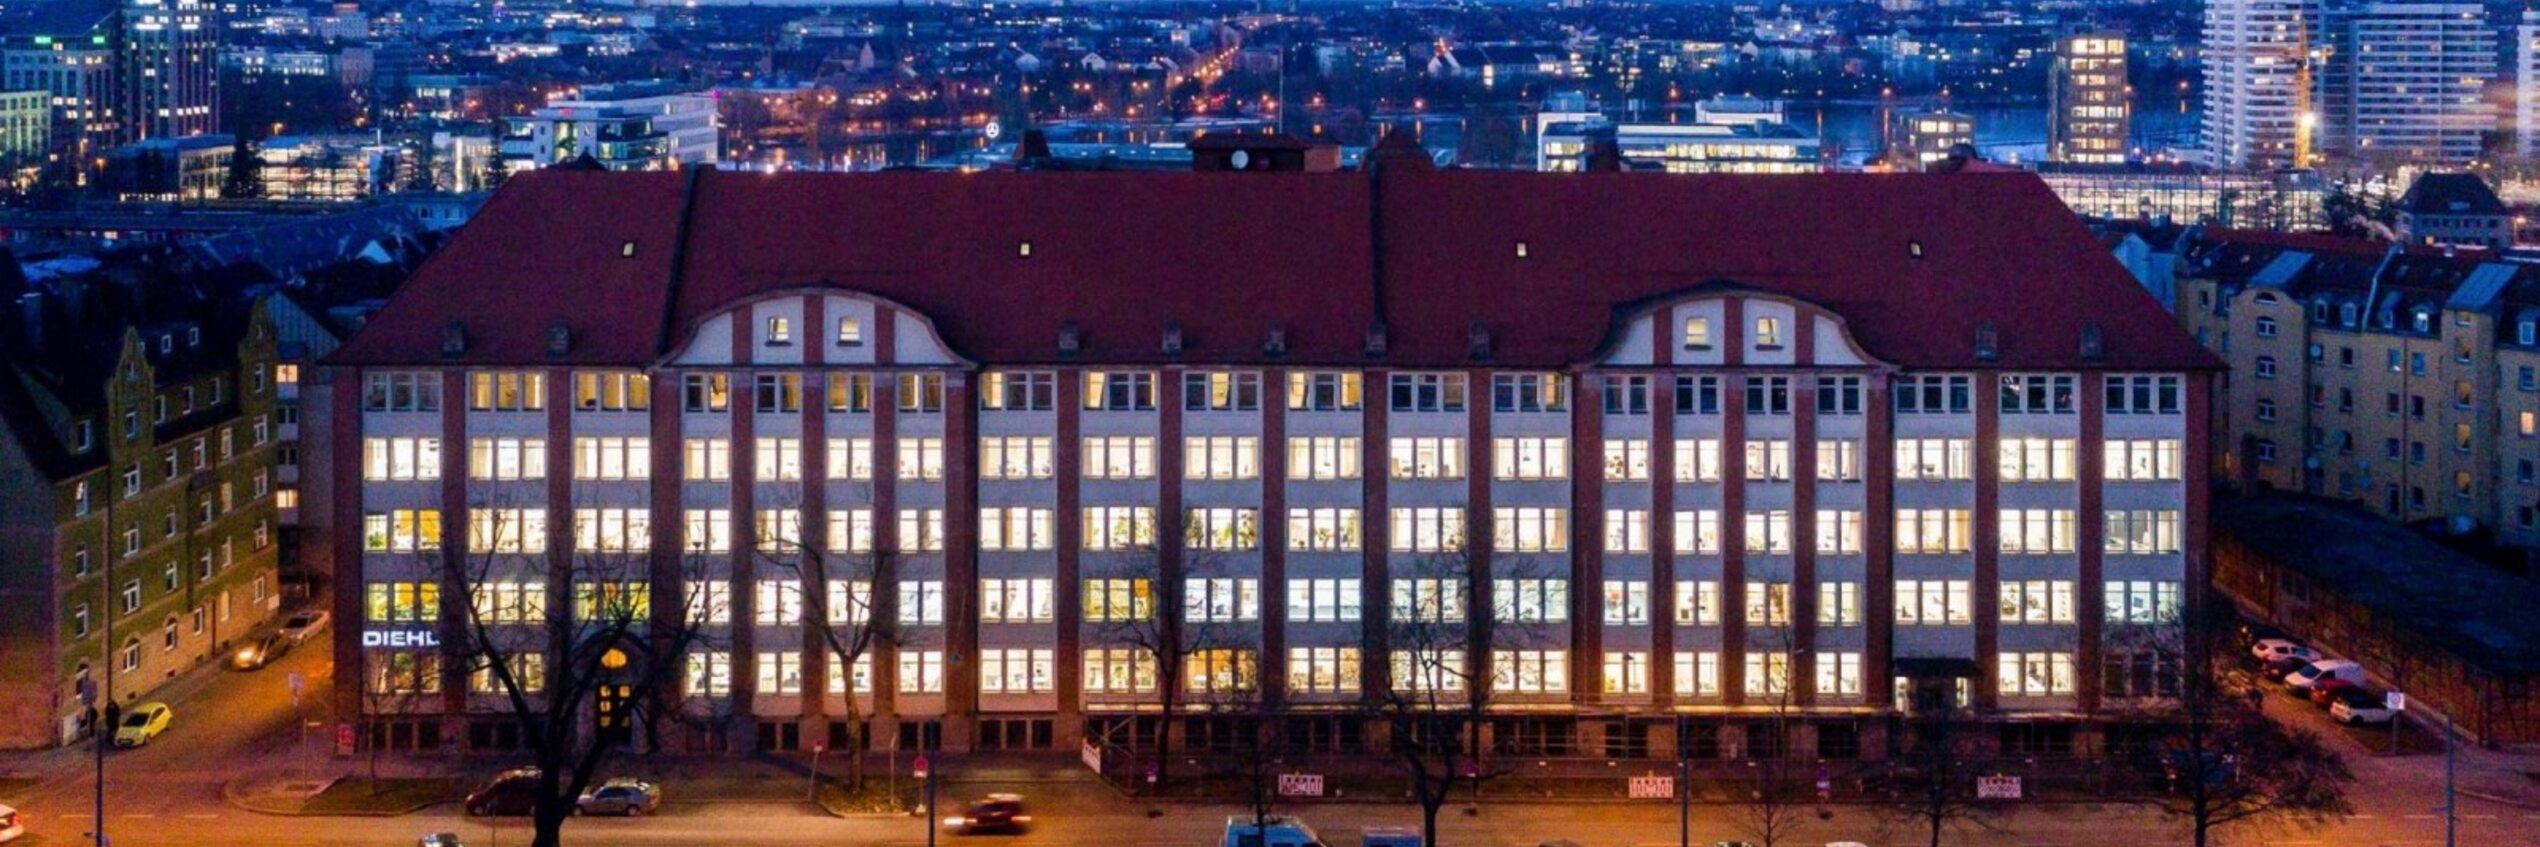 Main building of the Diehl Group in Nürnberg